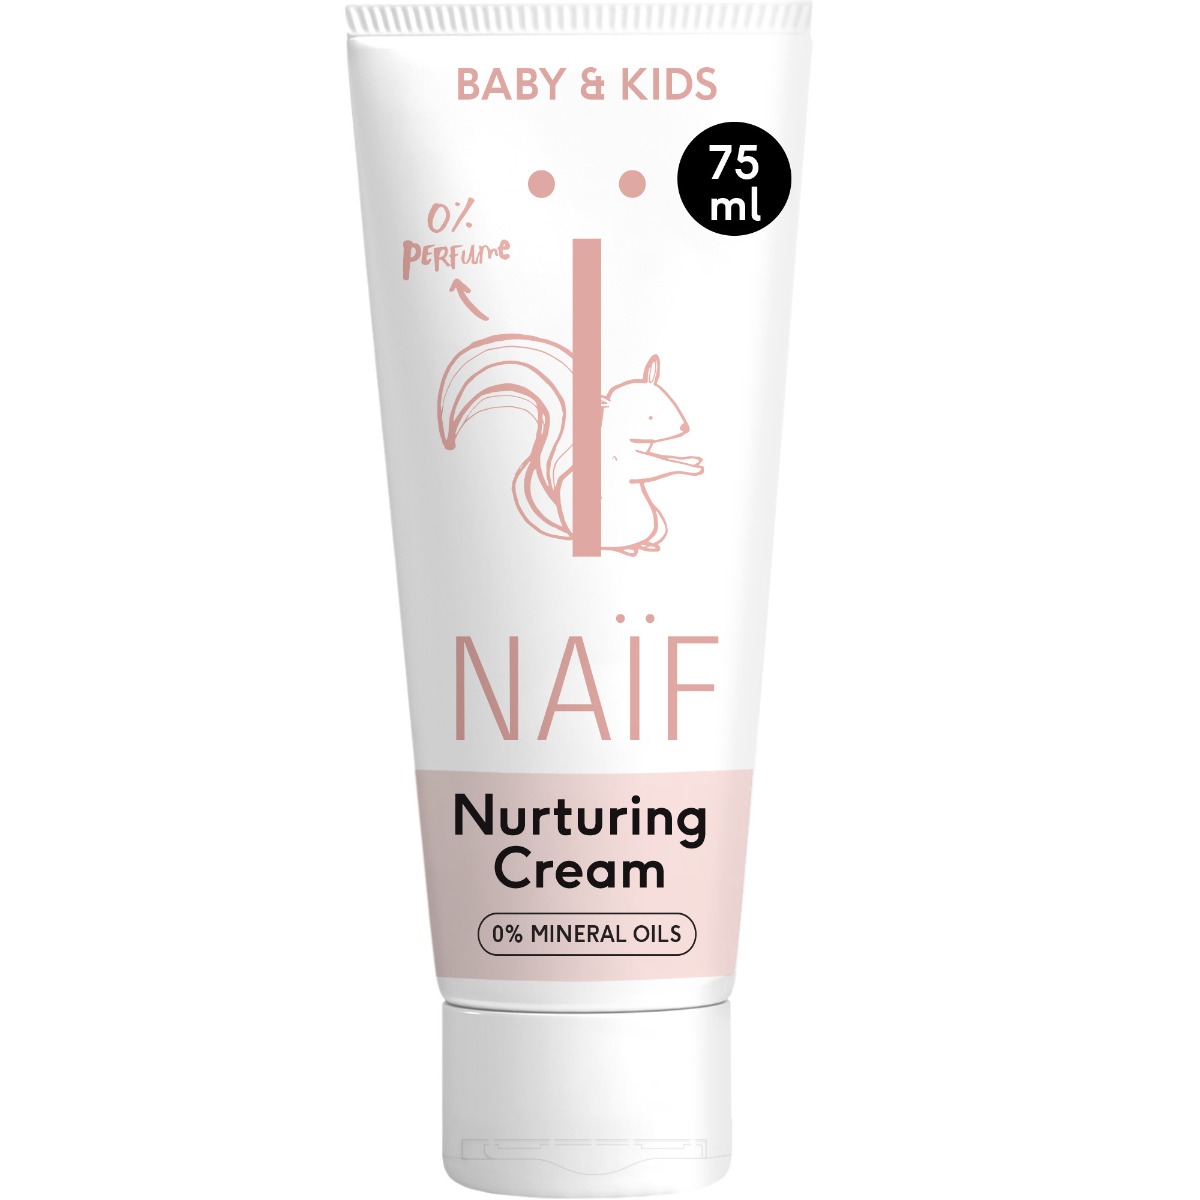 Crema nutritiva pentru piele uscata fara parfum adaugat pentru bebelusi si copii, 75ml, Naif